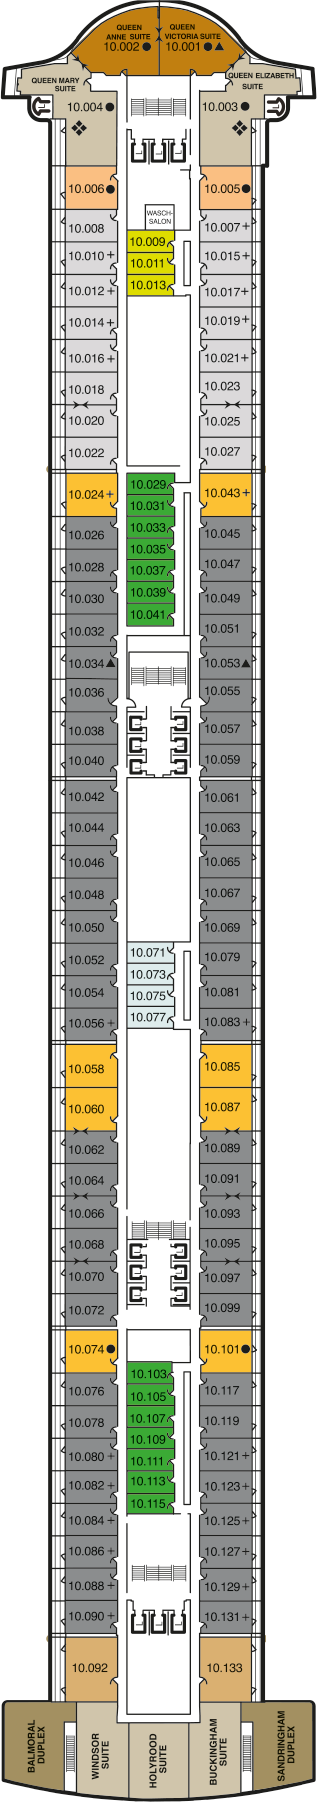 Queen Mary 2 - Decksplan Deck 10